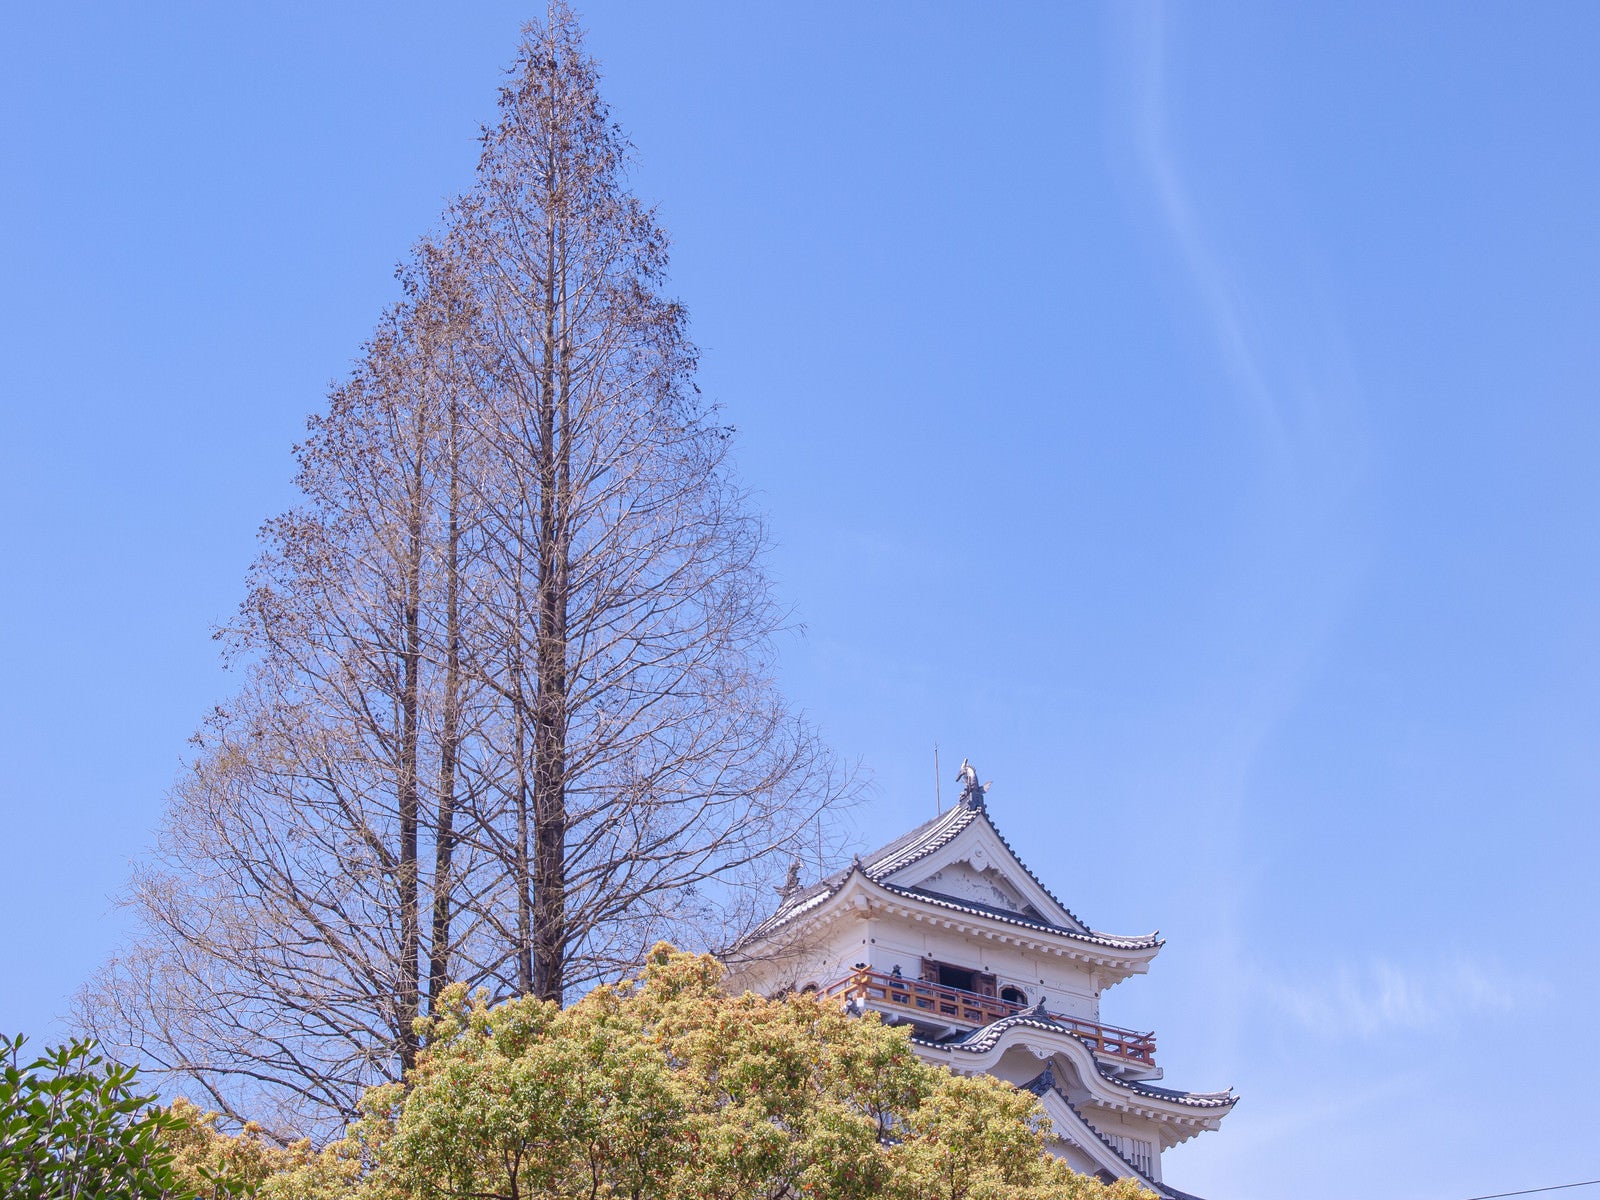 「針葉樹と日本の城」の写真